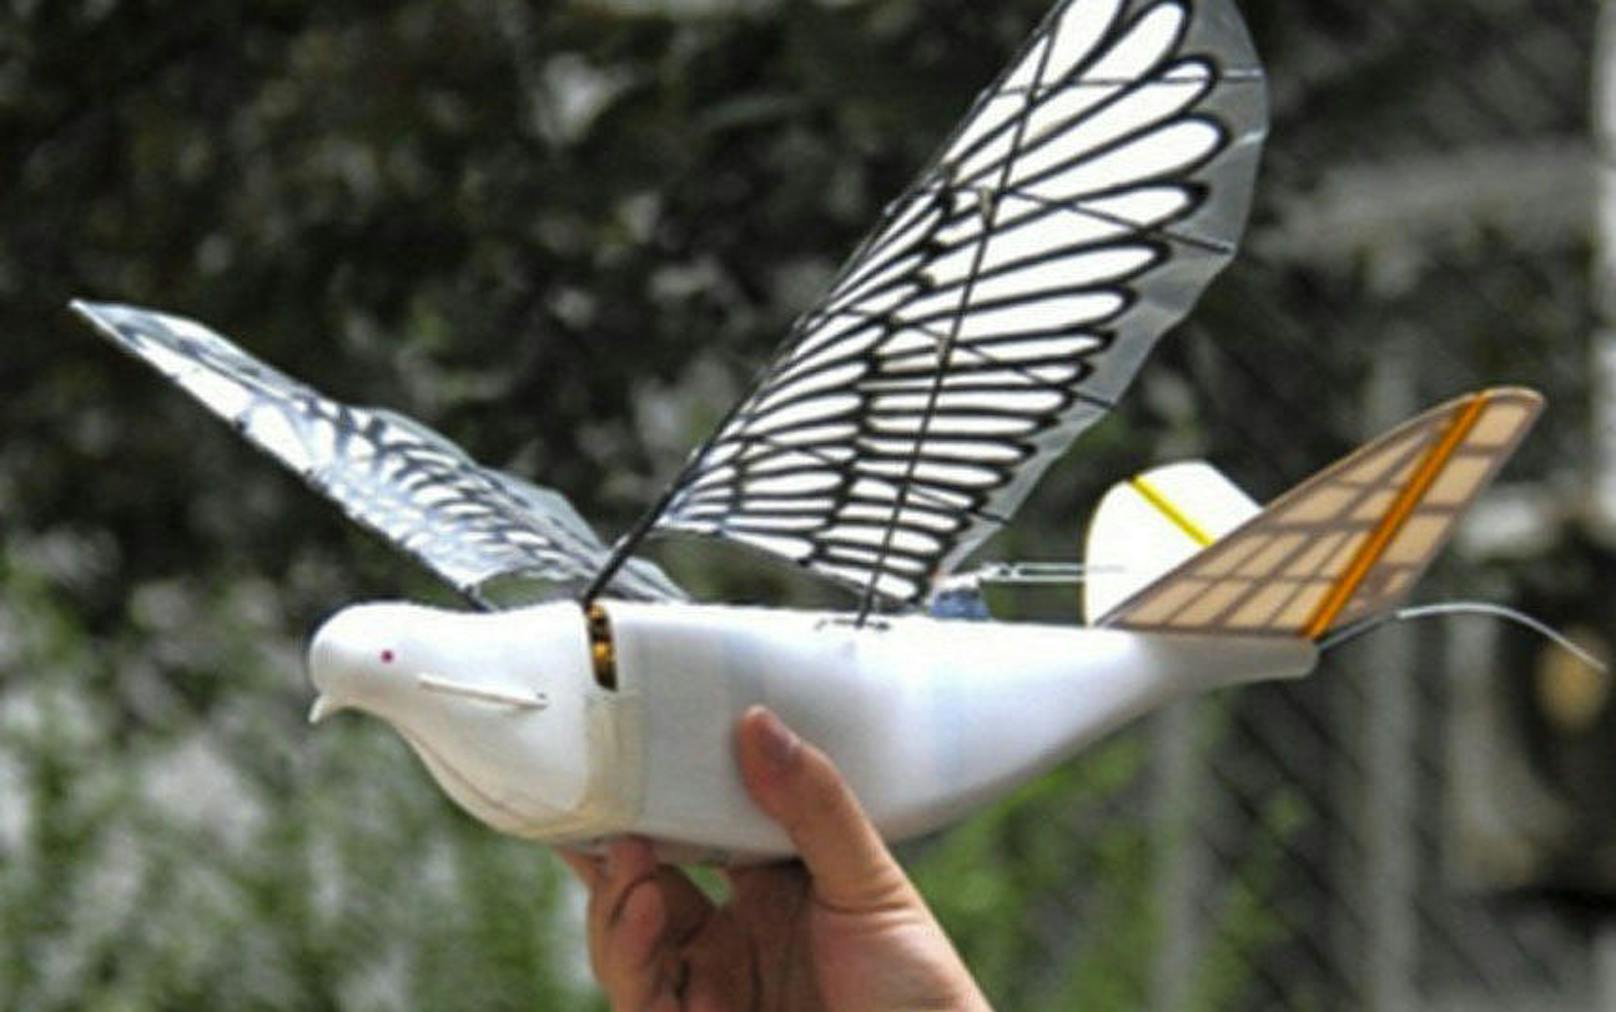 <b>30. Juni 2018: </b>China geht in Sachen Bürgerüberwachung noch einen Schritt weiter. Neben Gesichtserkennung, intelligenten Brillen und anderen Technologien sollen jetzt auch Drohnen in Vogelform zur Überwachung der 1,4 Milliarden Bürger beitragen. Die Drohnen sehen aus wie Tauben und ahmen mit ihren Flügeln auch deren schlagende Flugbewegung nach. Zudem verfügt jede Vogeldrohne über eine hochauflösende Kamera, eine GPS-Antenne, ein Flugkontrollsystem und eine Datenverbindung via Satellit. Einem Bericht der «South China Morning Post» zufolge sollen sie in mindestens fünf Provinzen zur Überwachung eingesetzt werden.